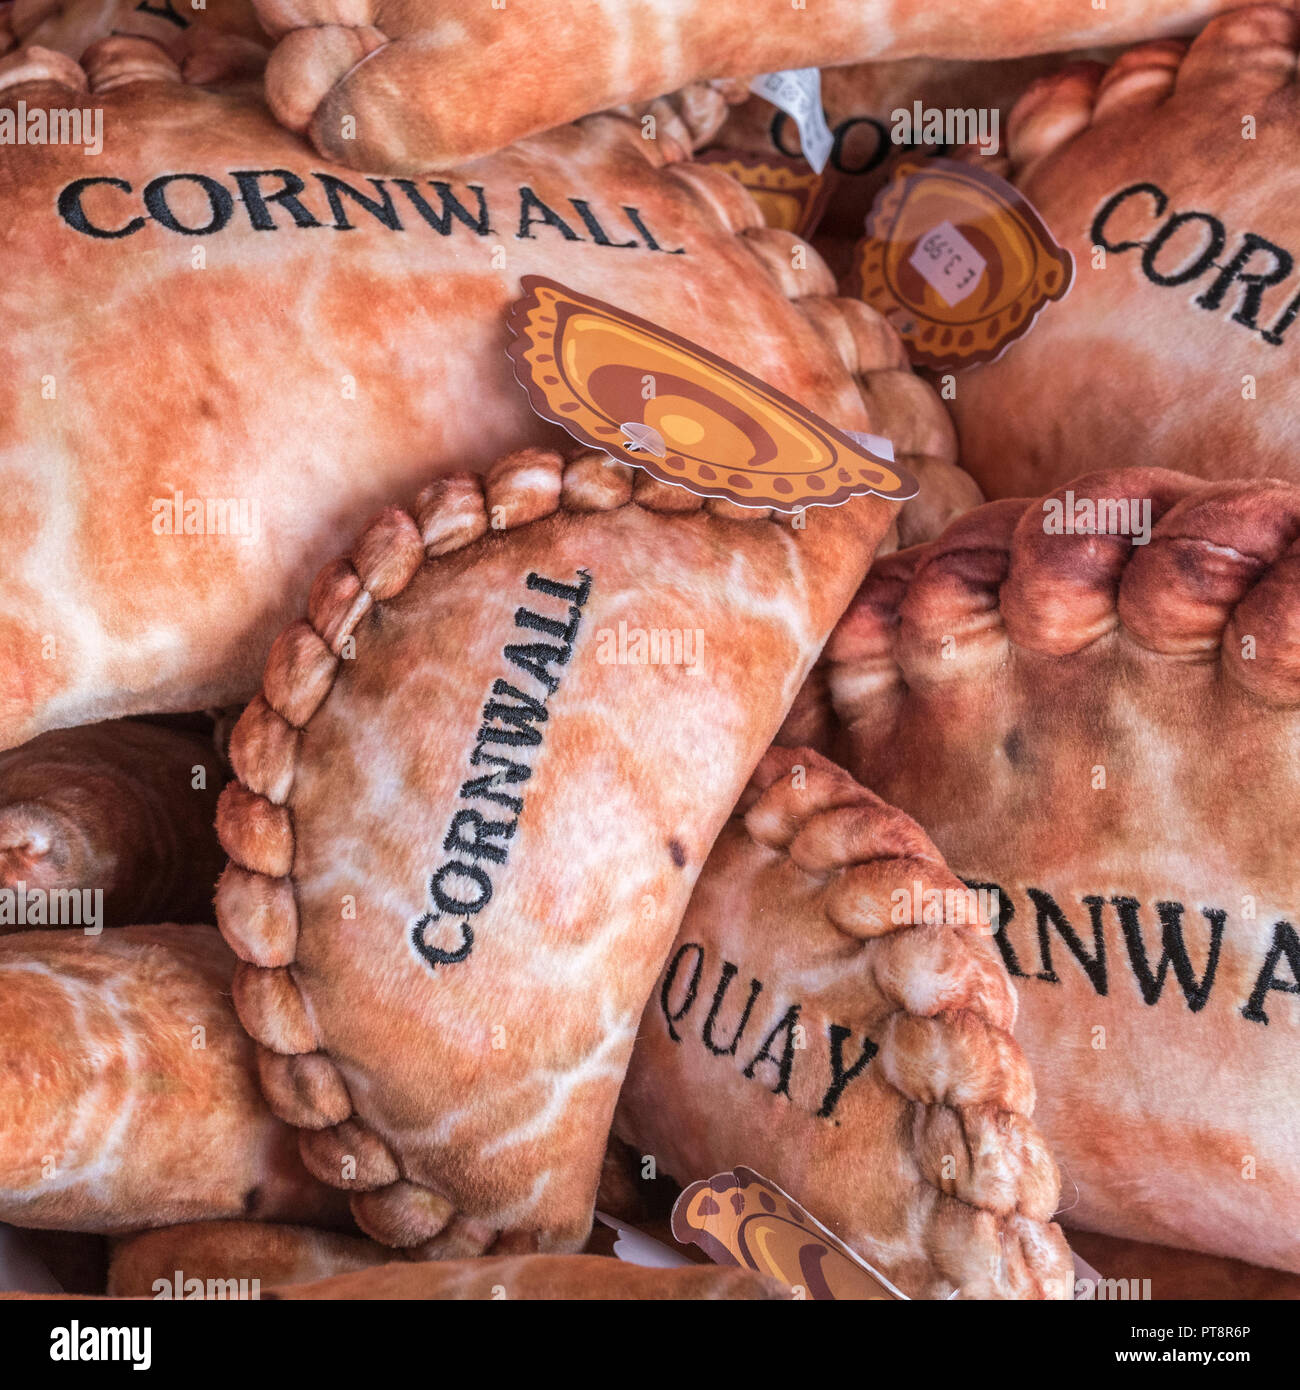 Souvenirs de feutre mou Cornish Newquay dans une boutique de souvenirs. Maison de vacances concept de Cornwall, de souvenirs. Banque D'Images